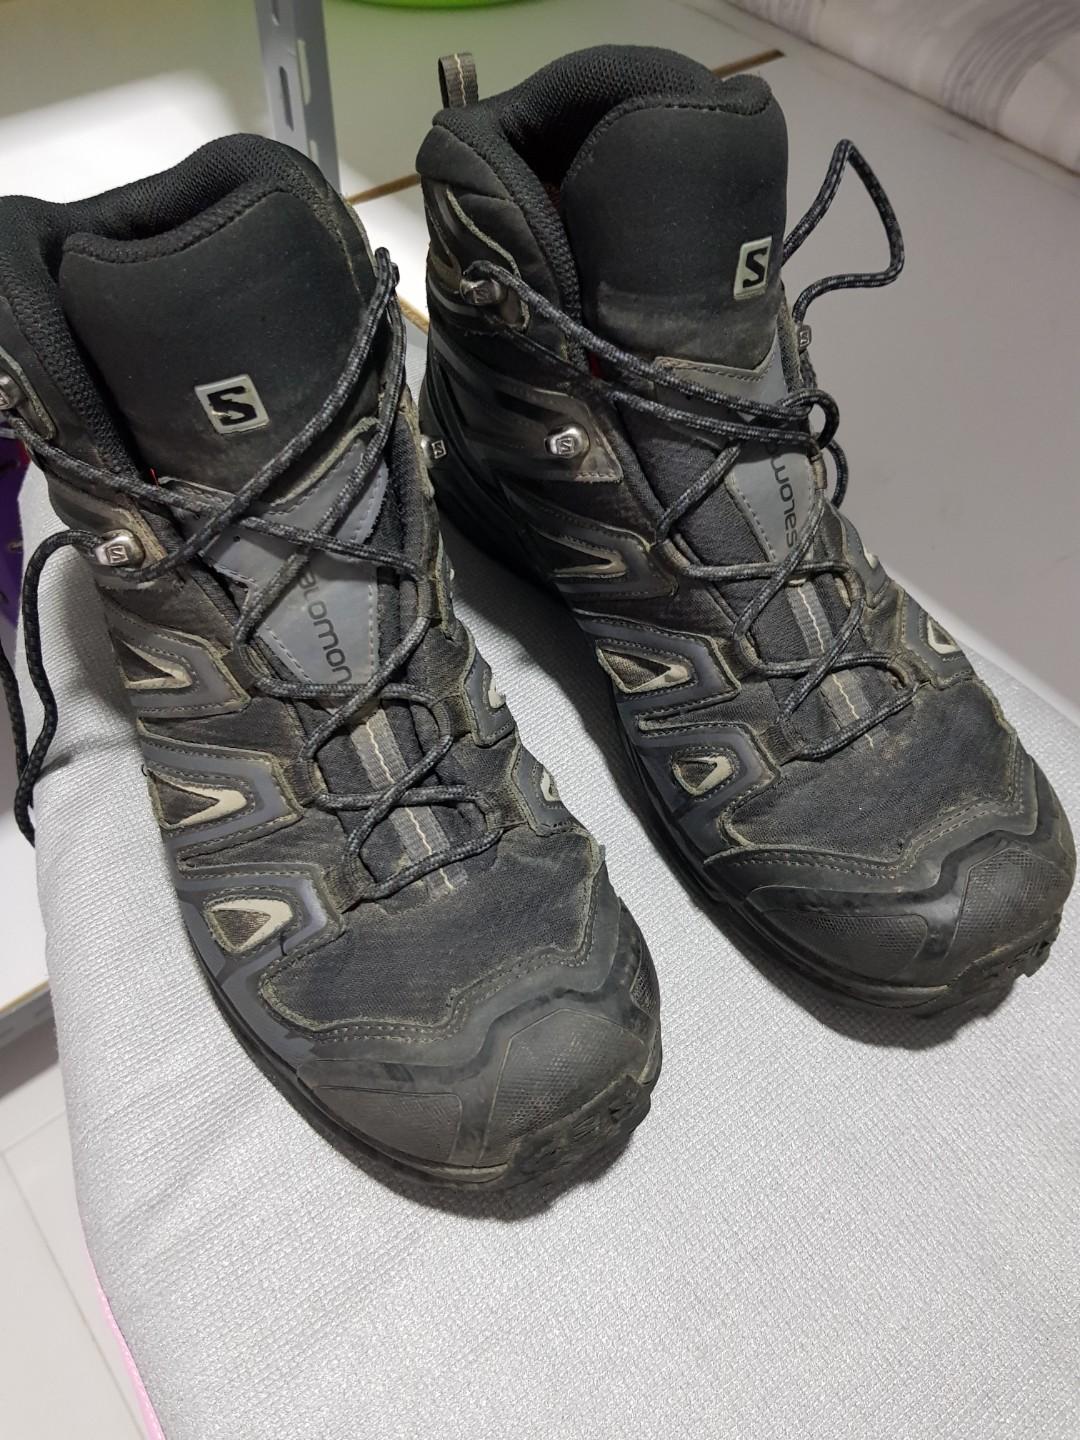 Salomon X Ultra 3 Mid GTX Hiking Boots 